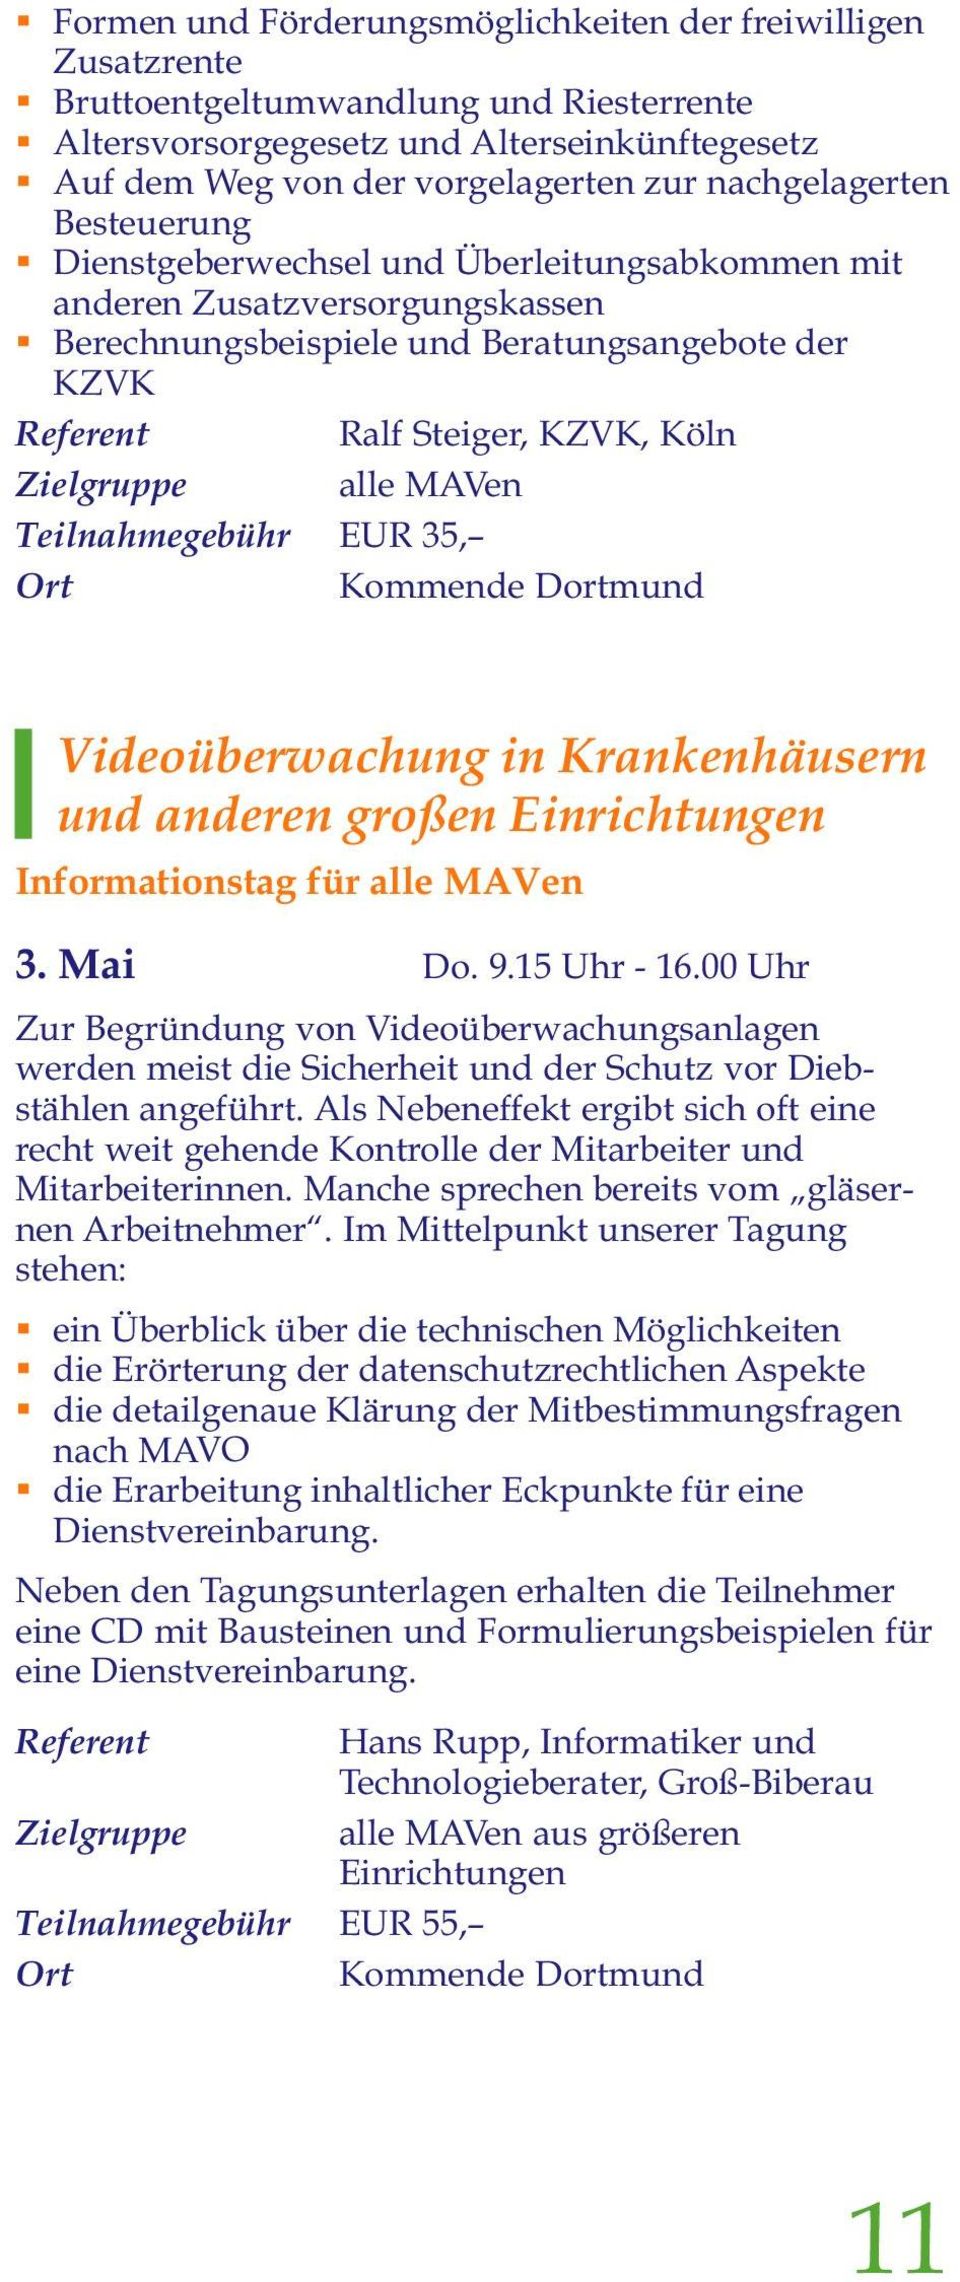 Zielgruppe alle MAVen Teilnahmegebühr EUR 35, Kommende Dortmund Videoüberwachung in Krankenhäusern und anderen großen Einrichtungen Informationstag für alle MAVen 3. Mai Do. 9.15 Uhr - 16.